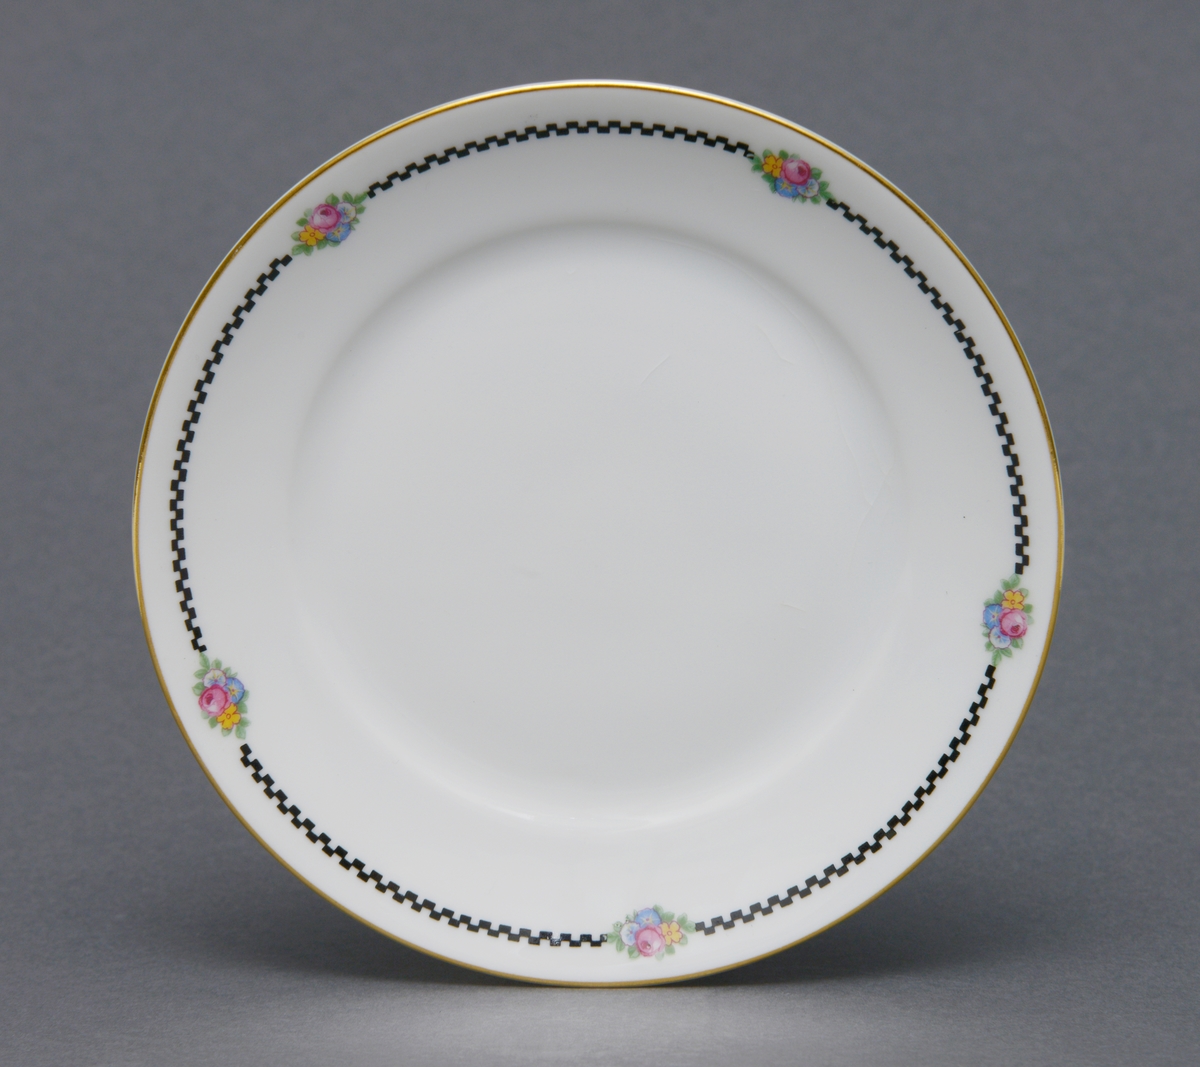 Sirkulær tallerken i porselen med glasur. Dekorert med en gullforgylt ring rundt kanten og en svart geometrisk bord med blomstermotiv innimellom borden.